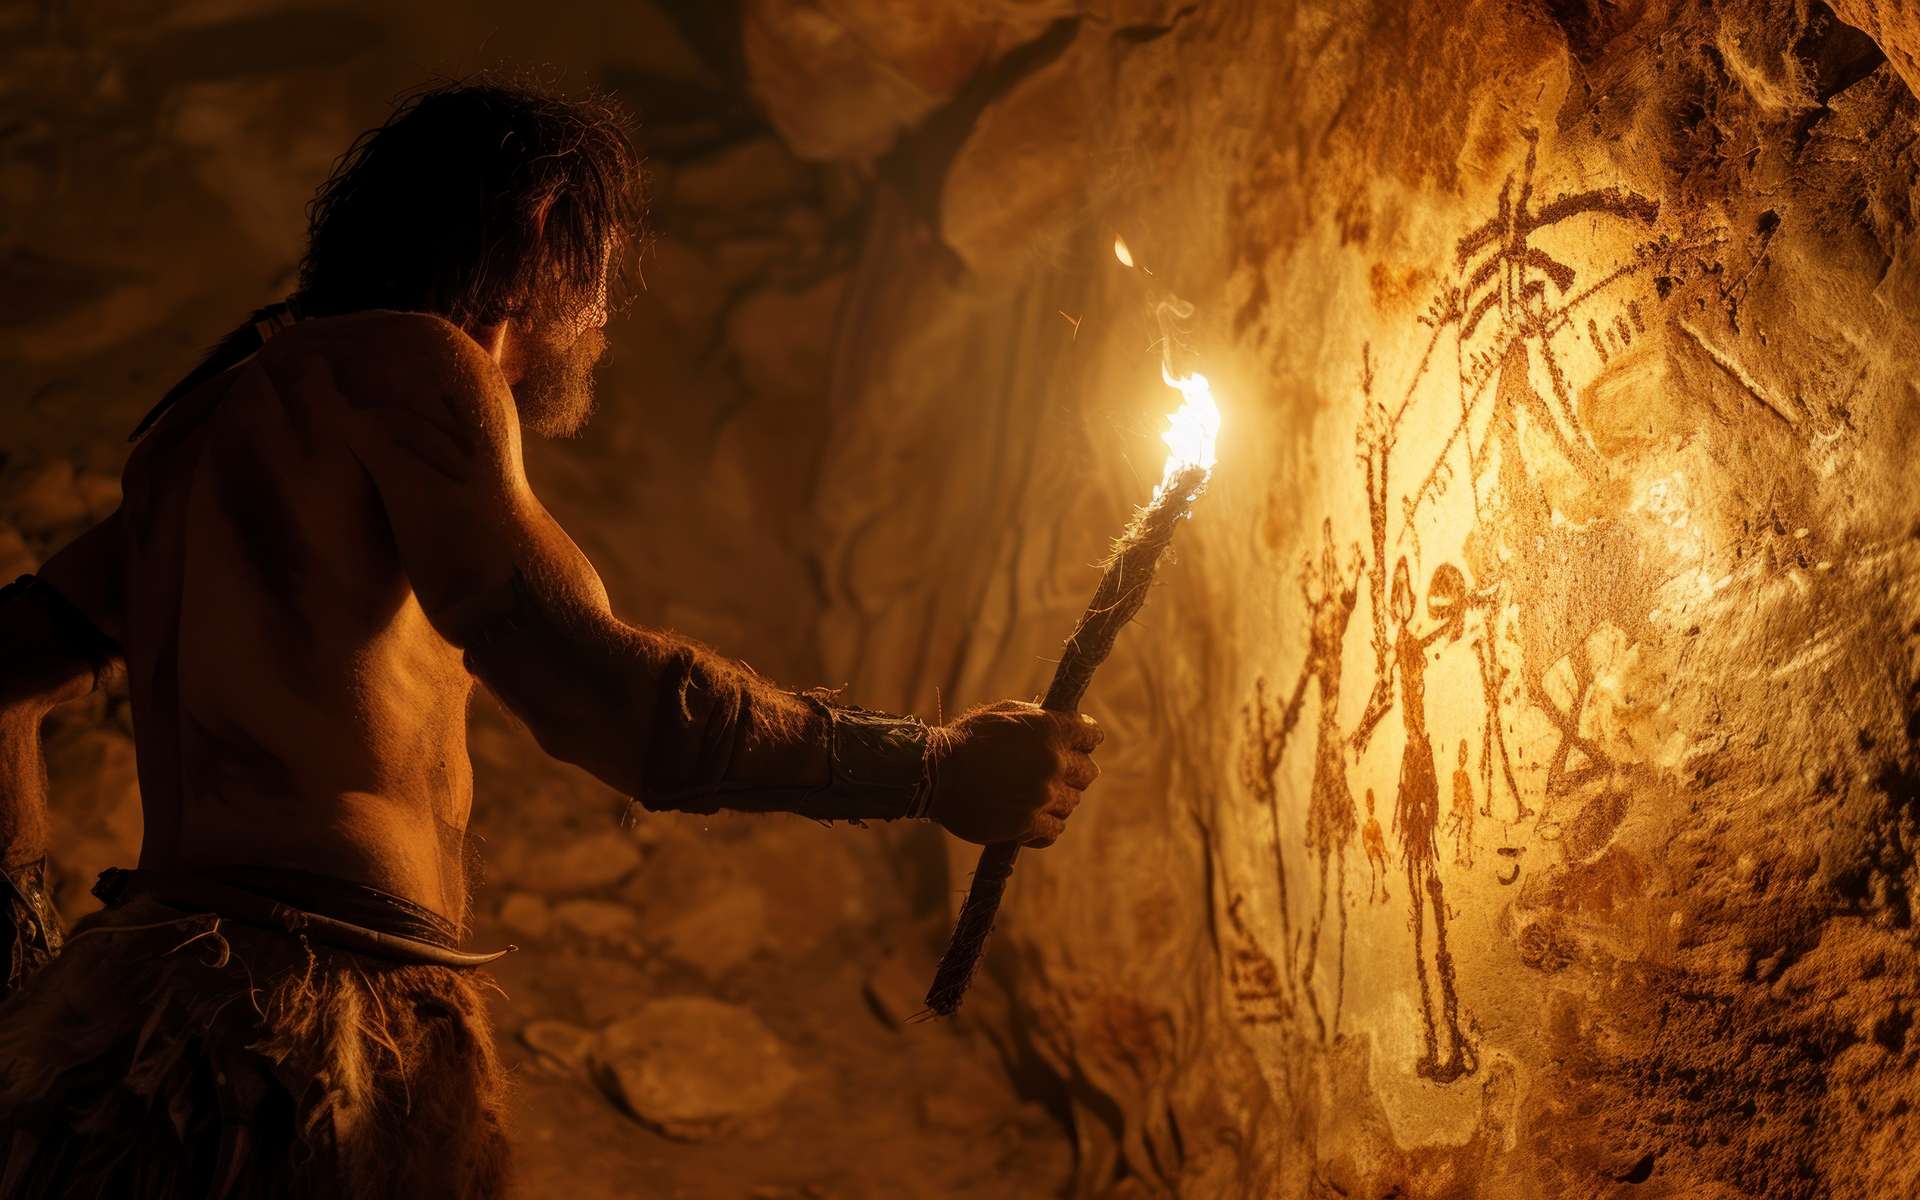 Tout indique que Néandertal gravait des oeuvres d'art sur des os il y a 130 000 ans !